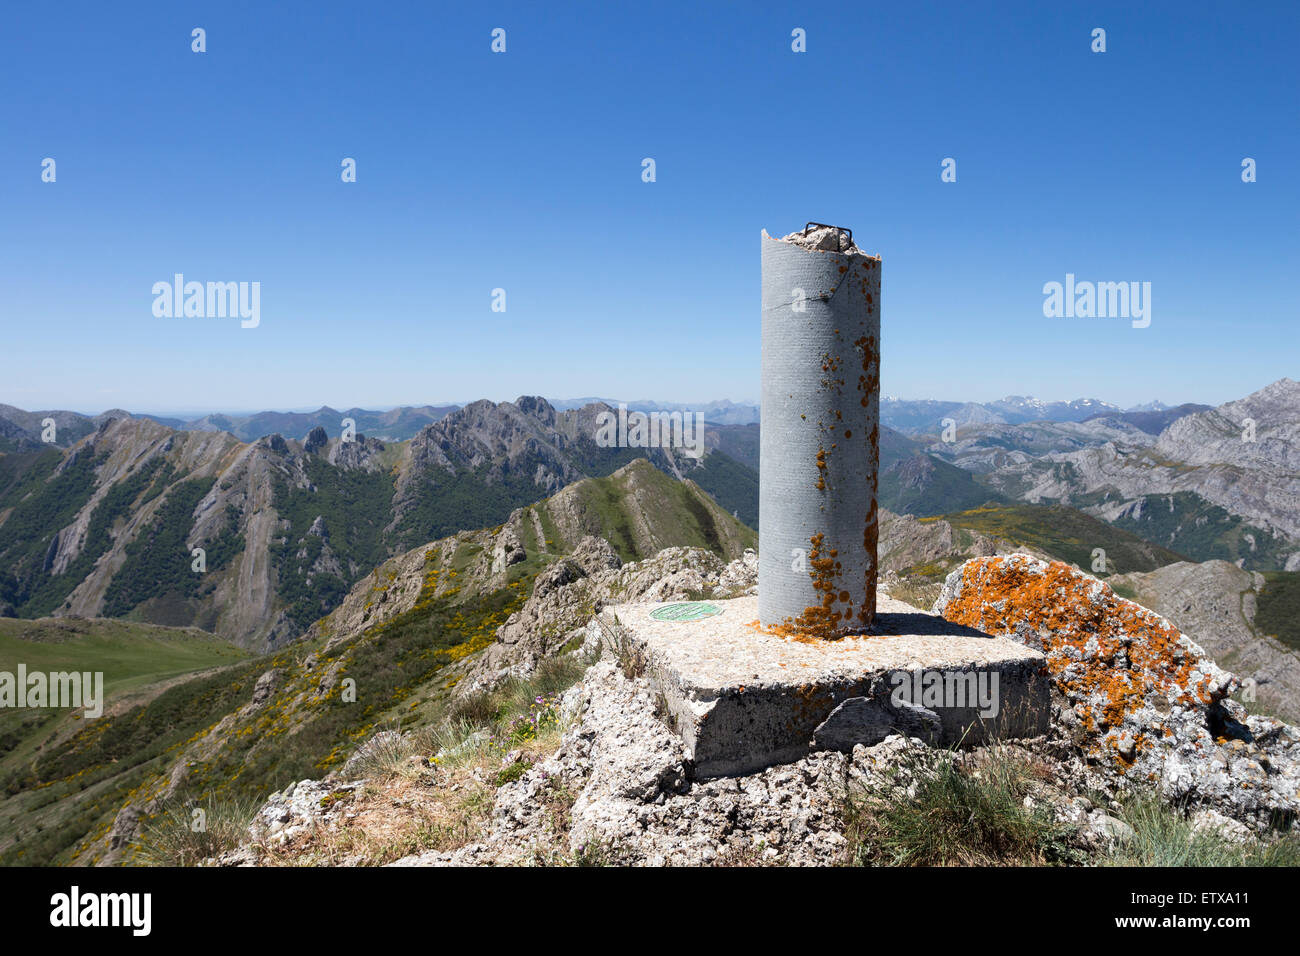 Le Sommet de Pico, Loto (Lotus Crête) Cordillera monts Cantabriques avec la vue sur le massif des pics d''Europe Espagne Banque D'Images